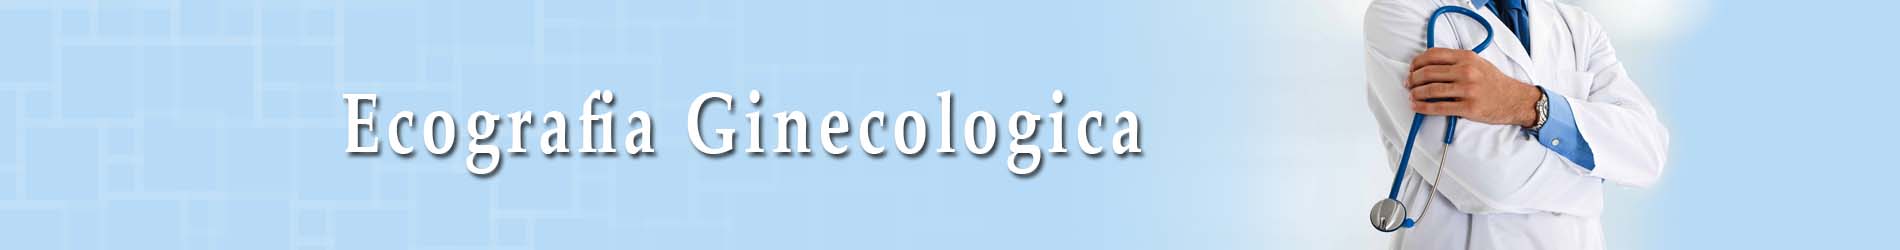 ecografia_ginecologica